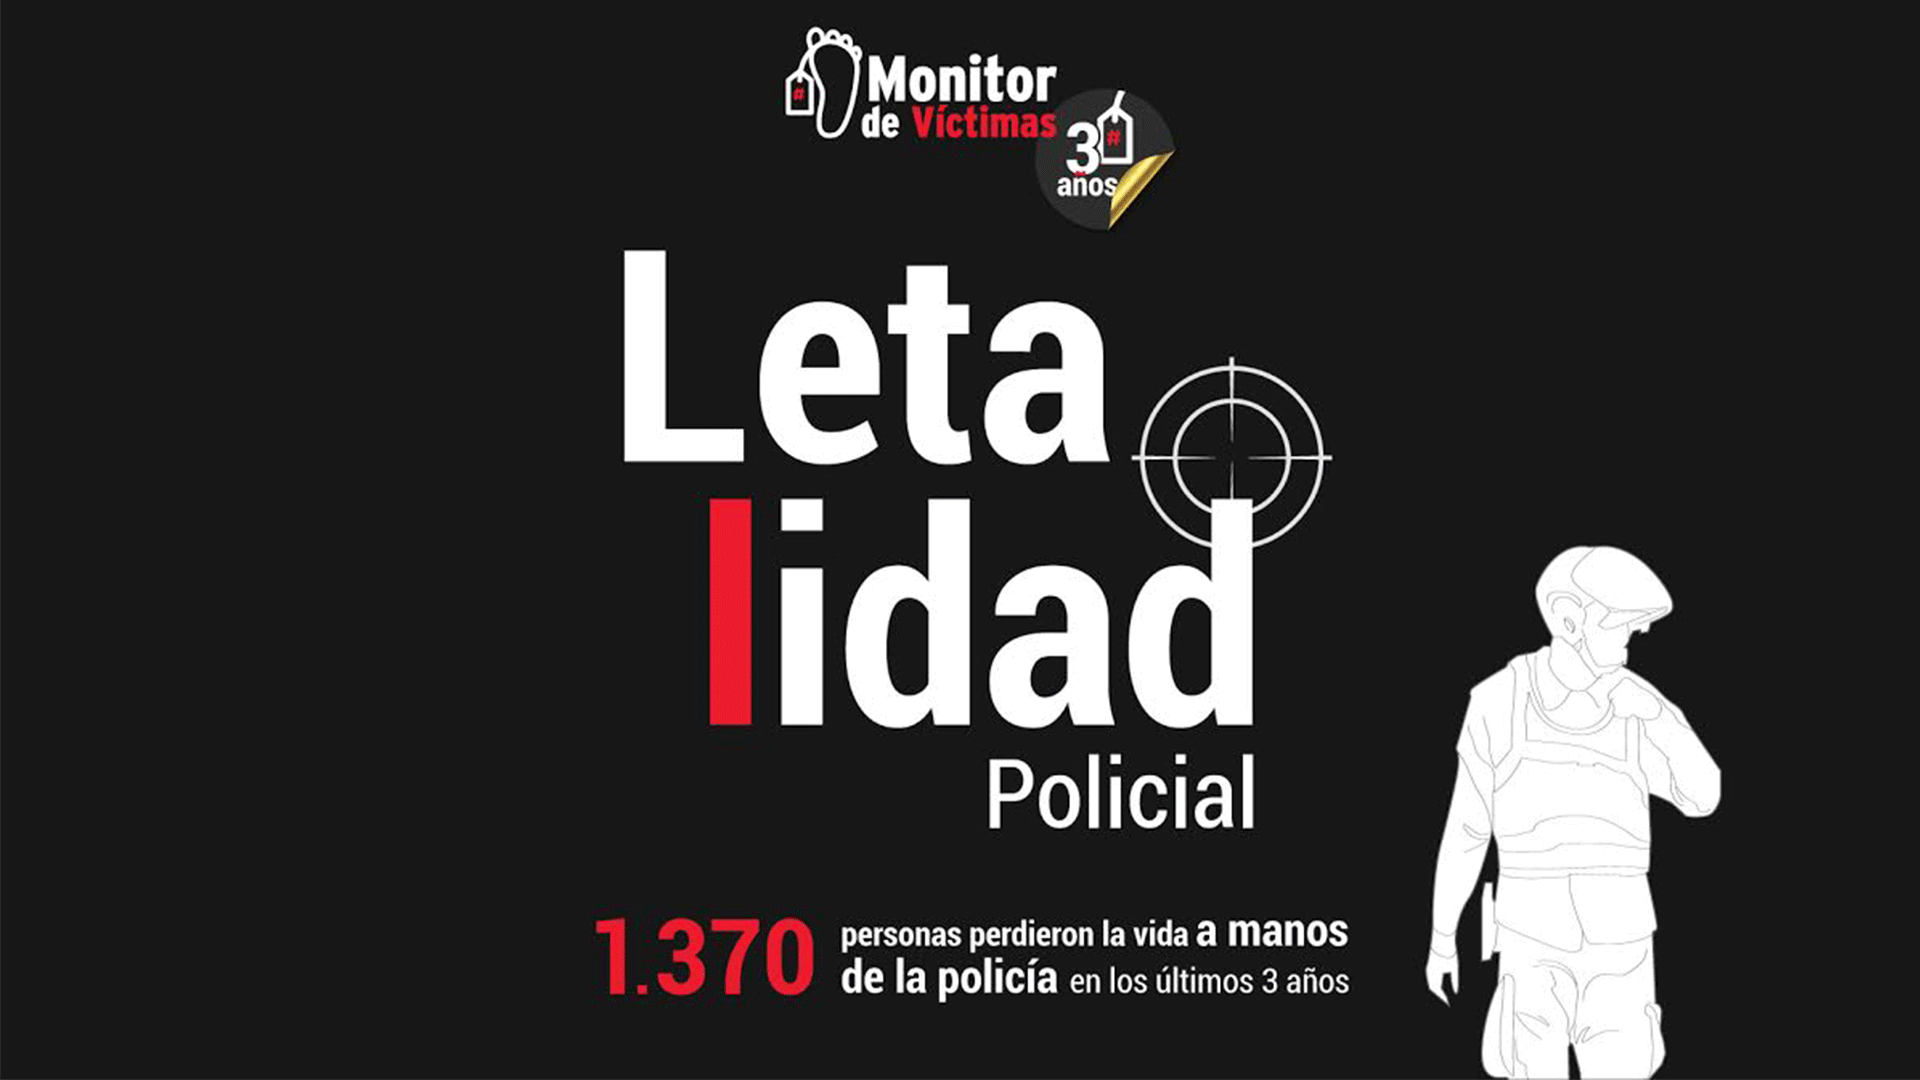 #MonitorDeVíctimas | Letalidad policial ha dejado 1370 personas muertas en tres años